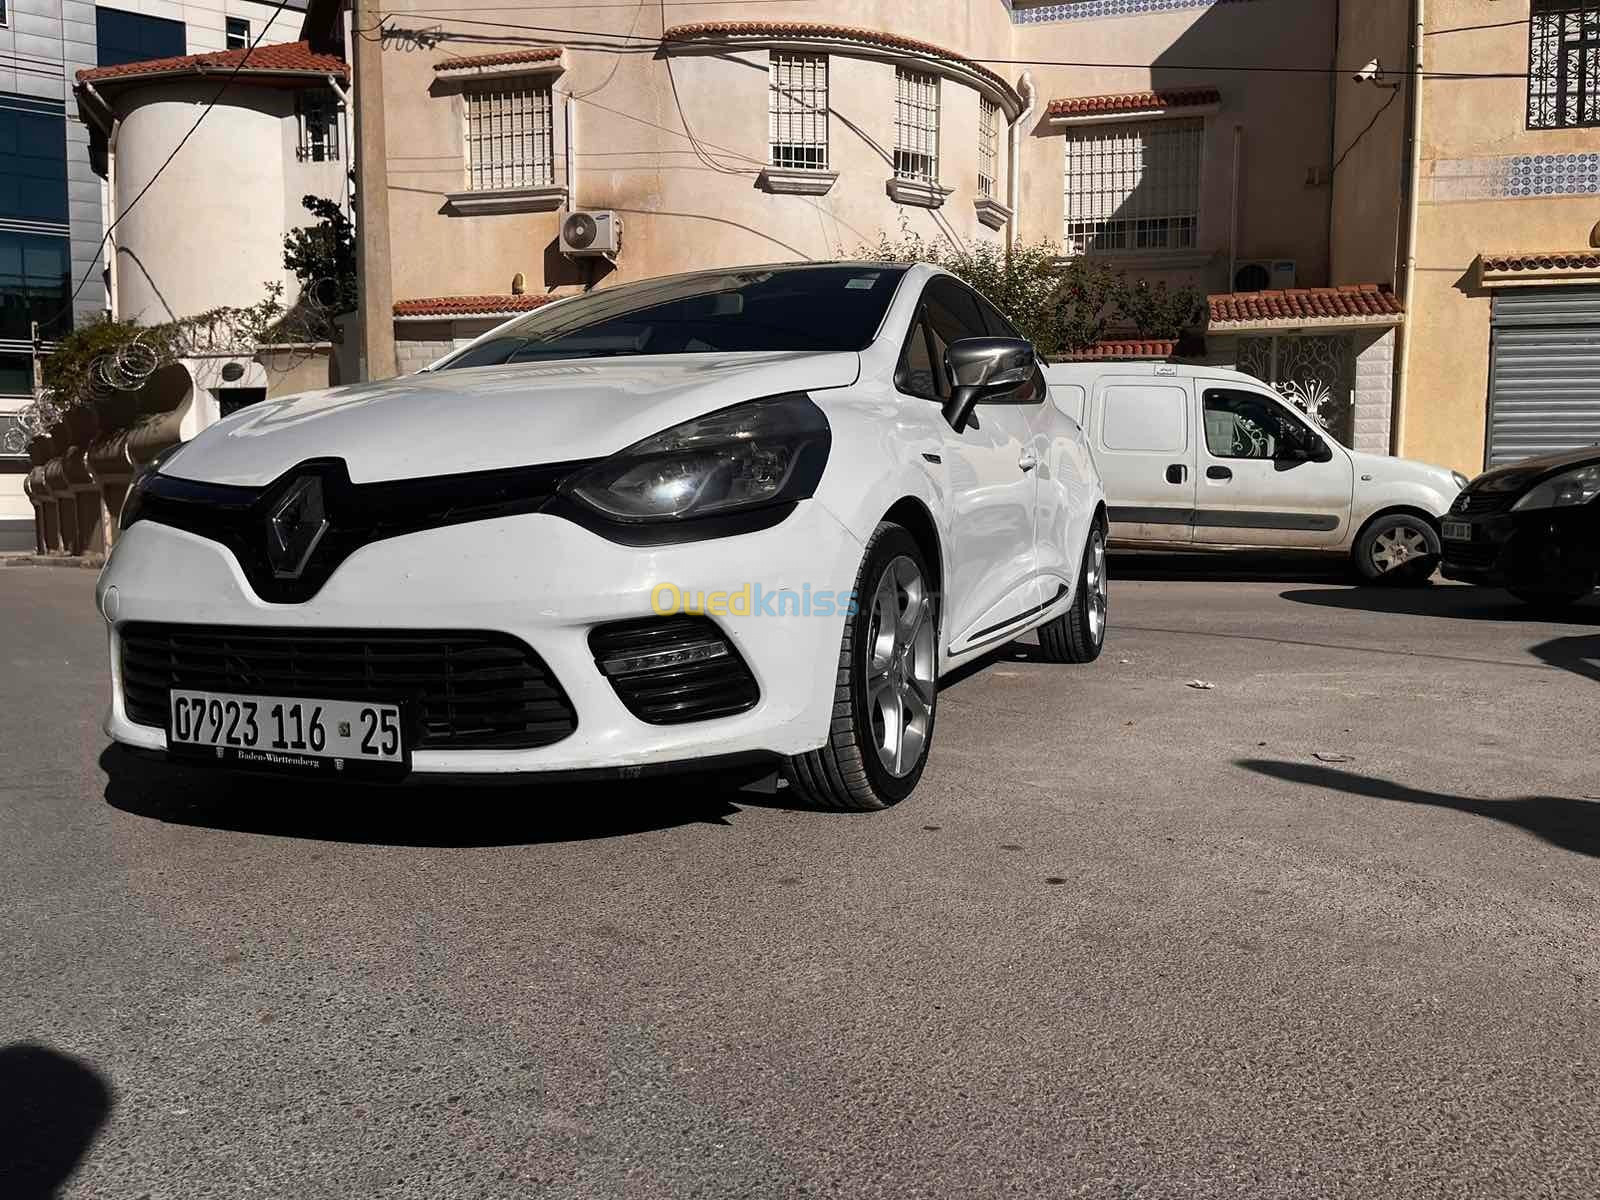 Renault Clio 4 2016 GT Line + - Constantine Algérie